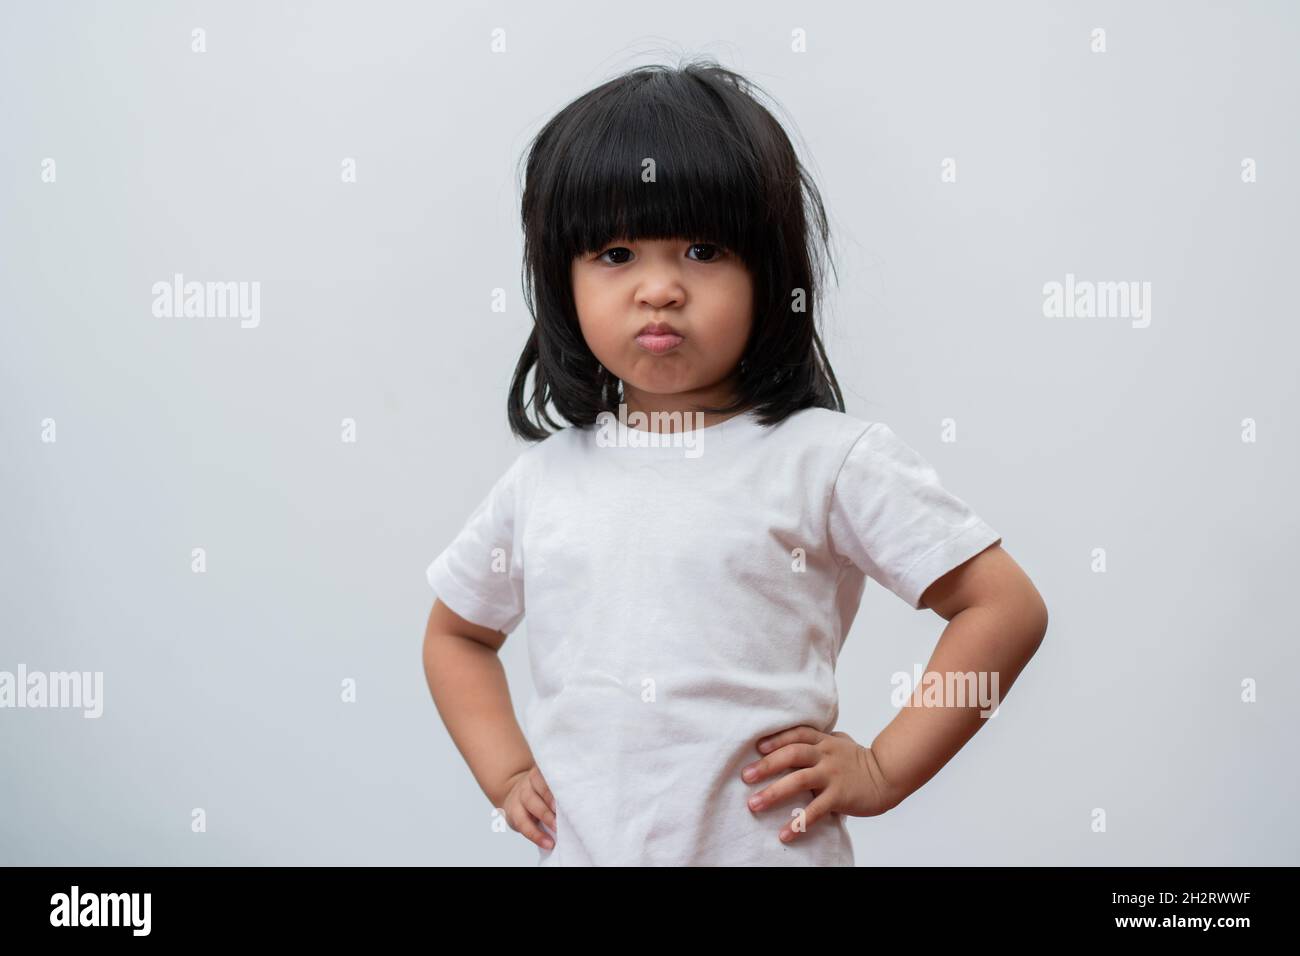 Portrait de la petite fille asiatique en colère et triste sur fond blanc isolé, l'émotion d'un enfant quand la colère et la folie, l'expression gronde émotion.Enfant Banque D'Images